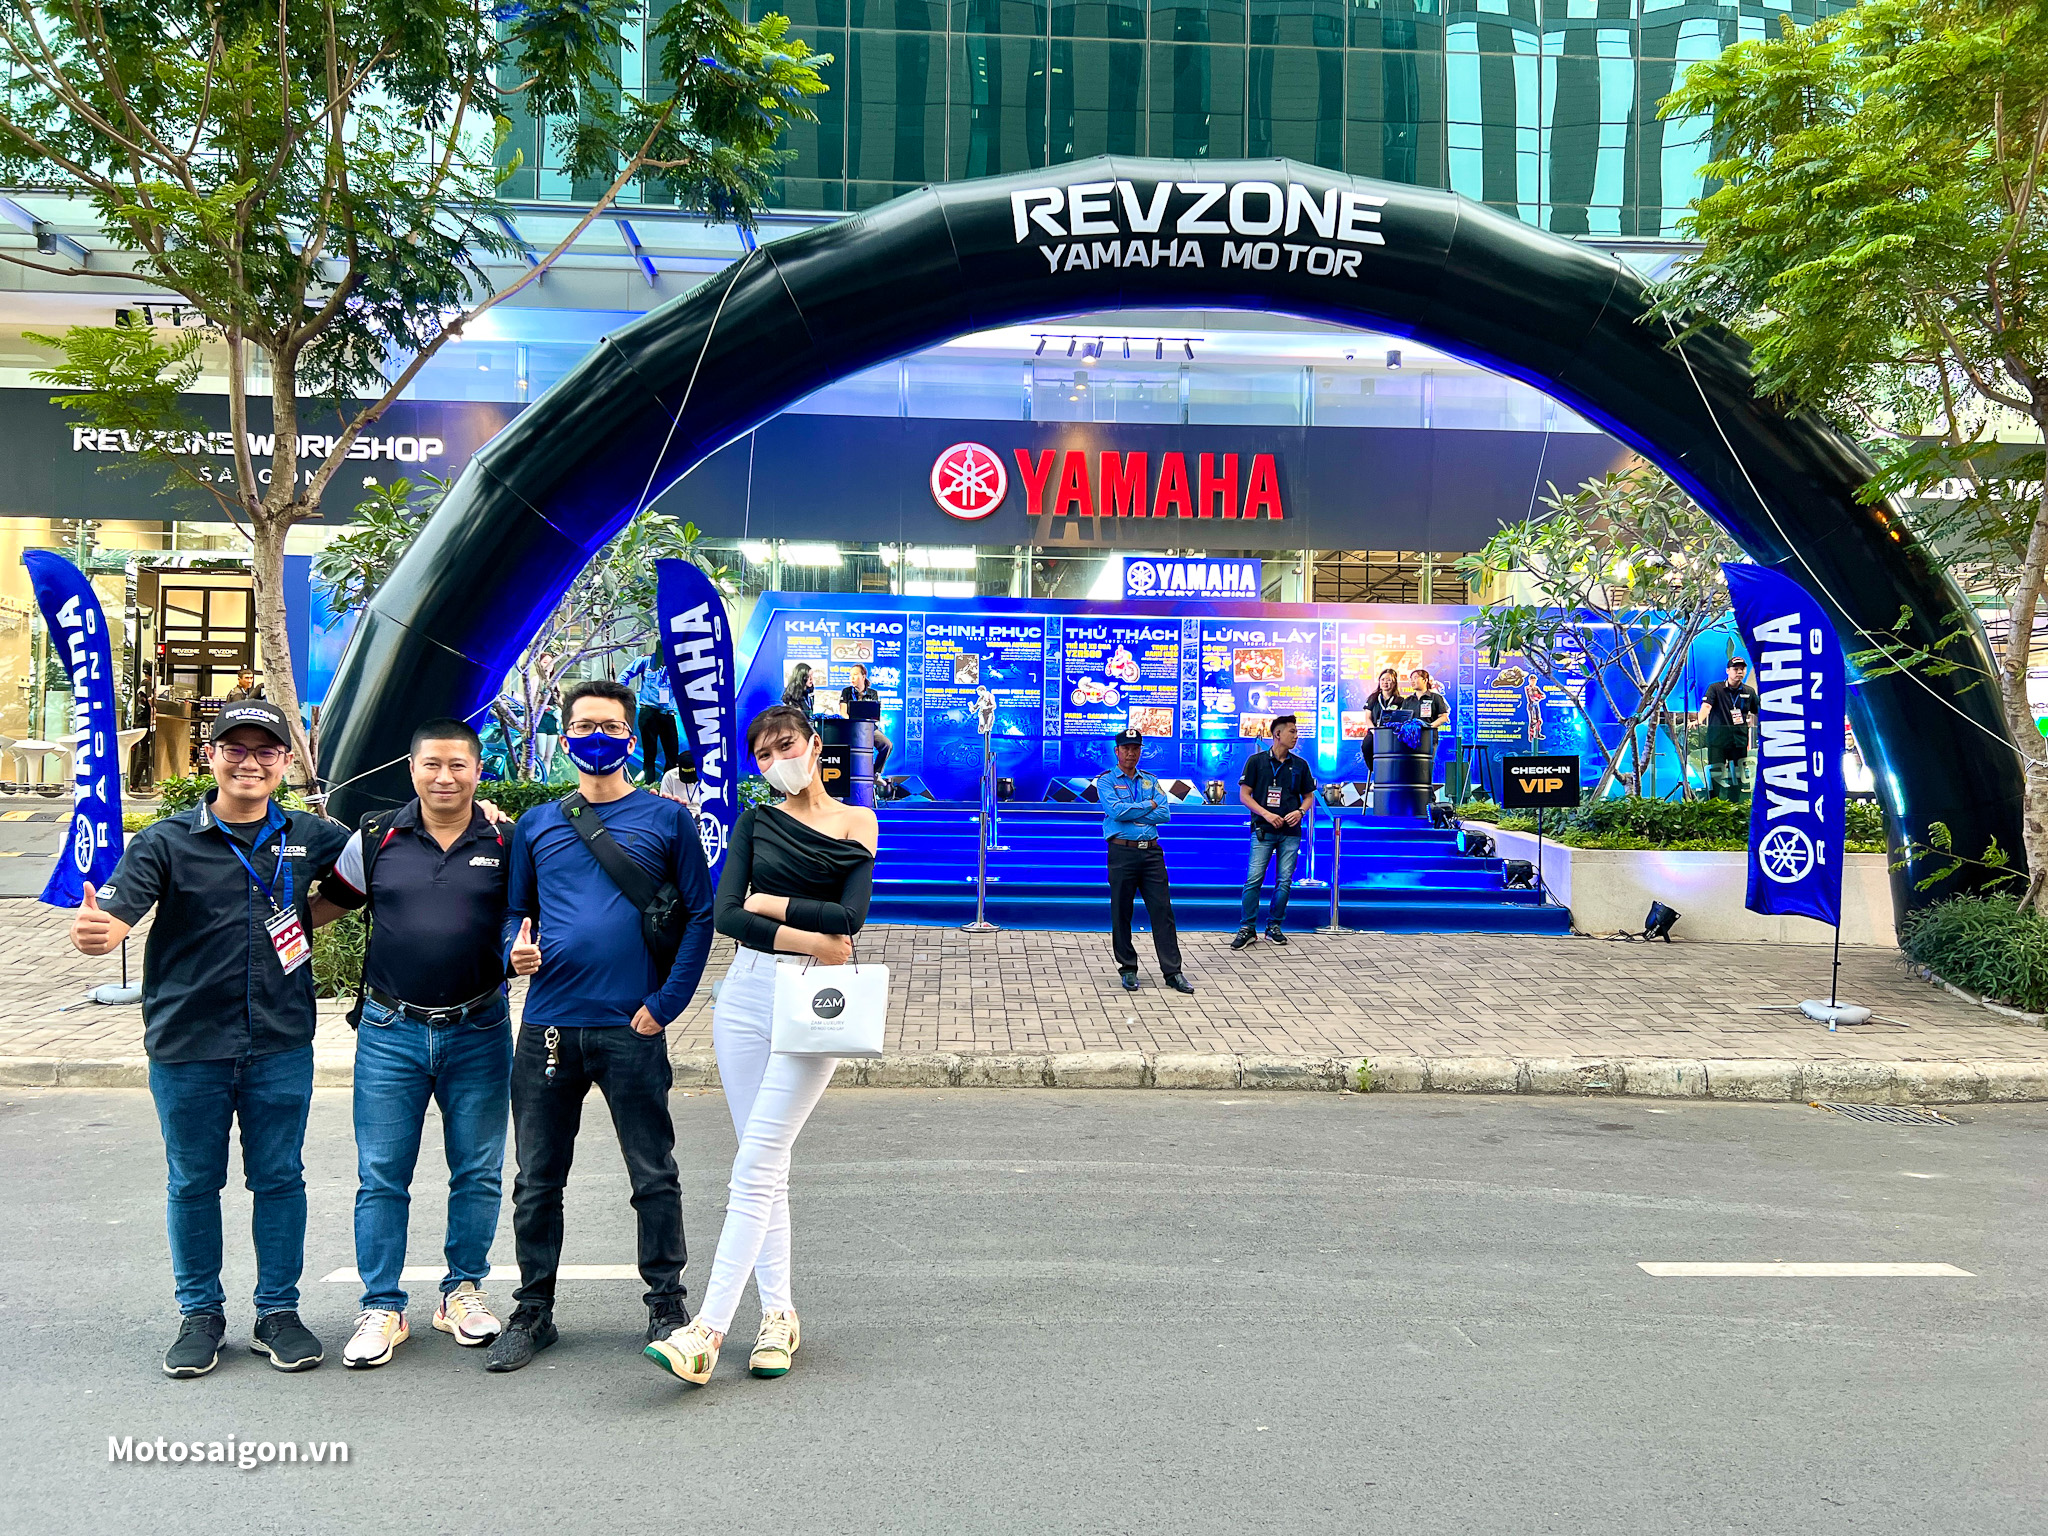 Hai tay đua MotoGP: Fabio & Franco giao lưu với các biker Việt tại Revzone Yamaha Motor